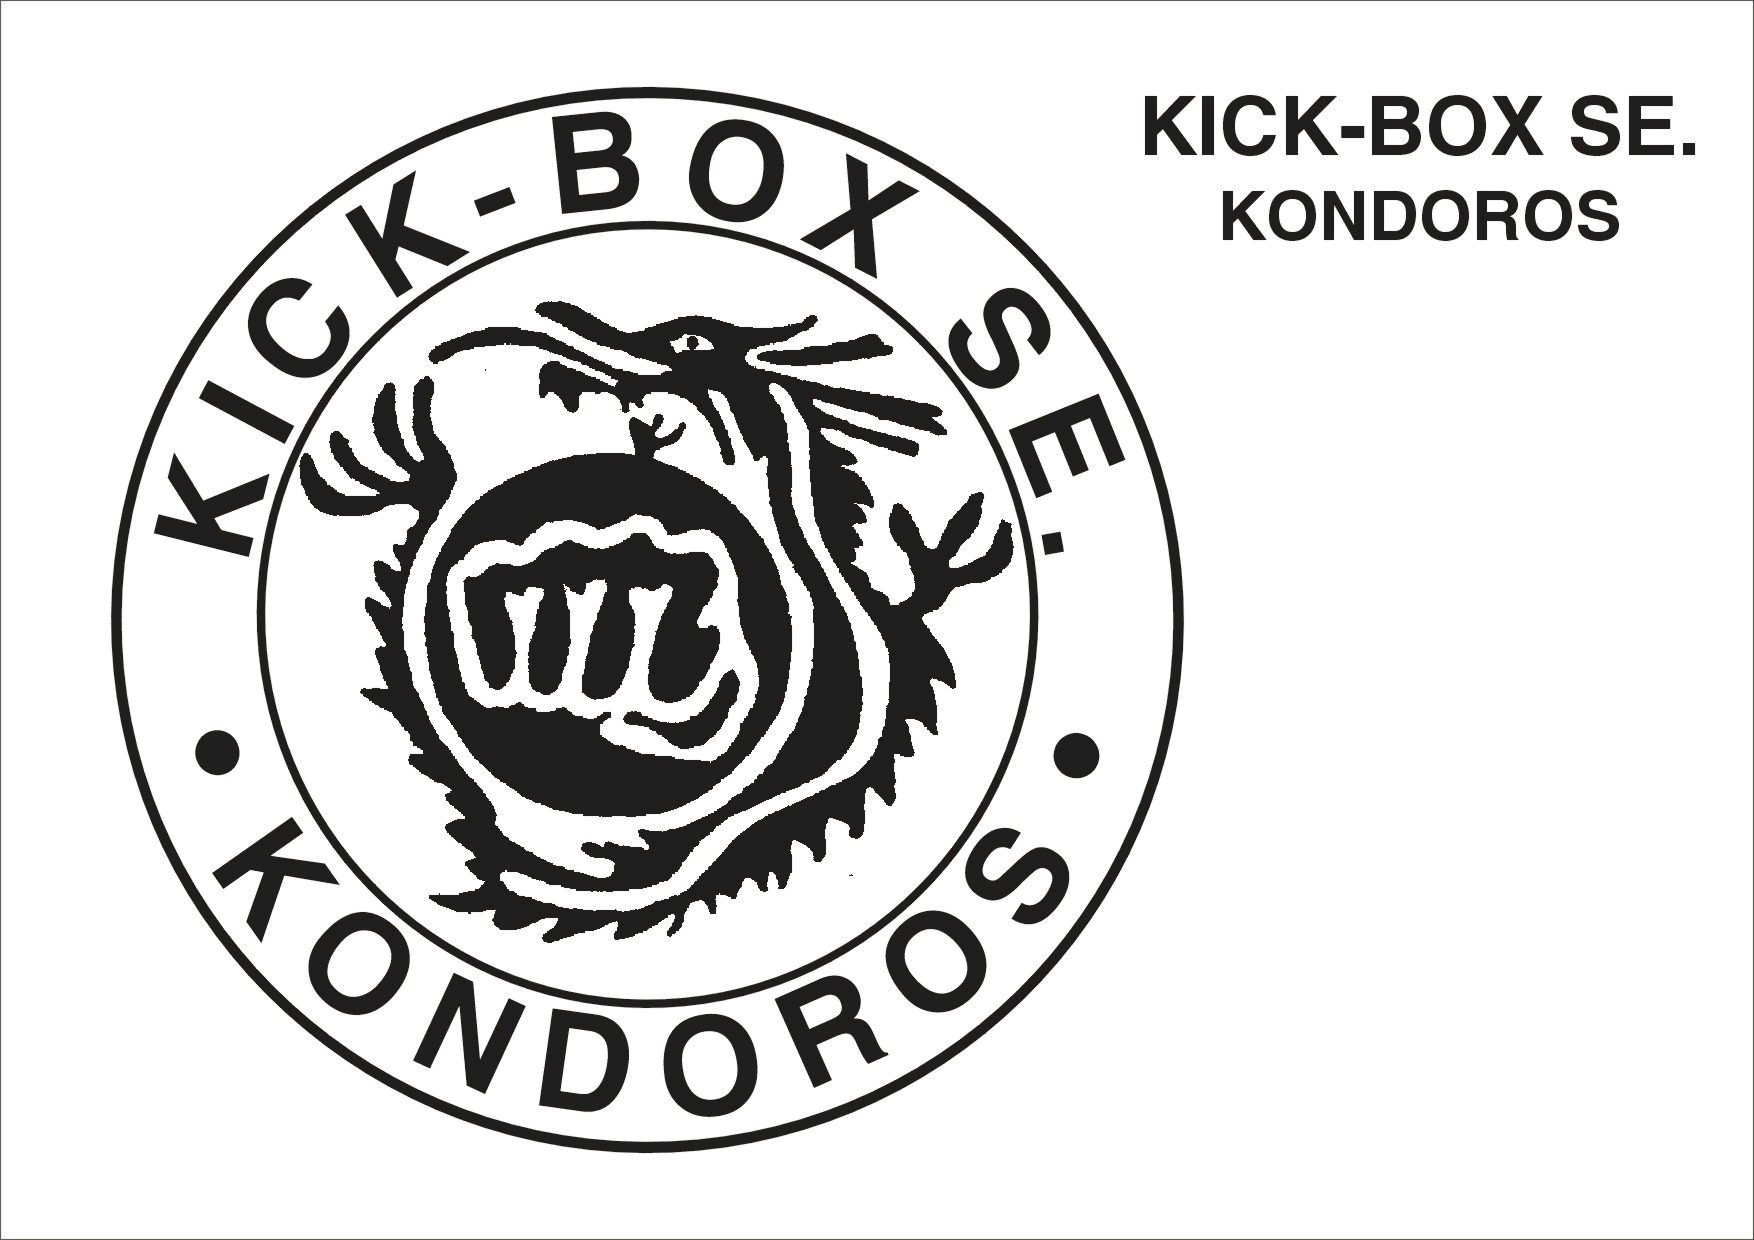 Kick-Box SE